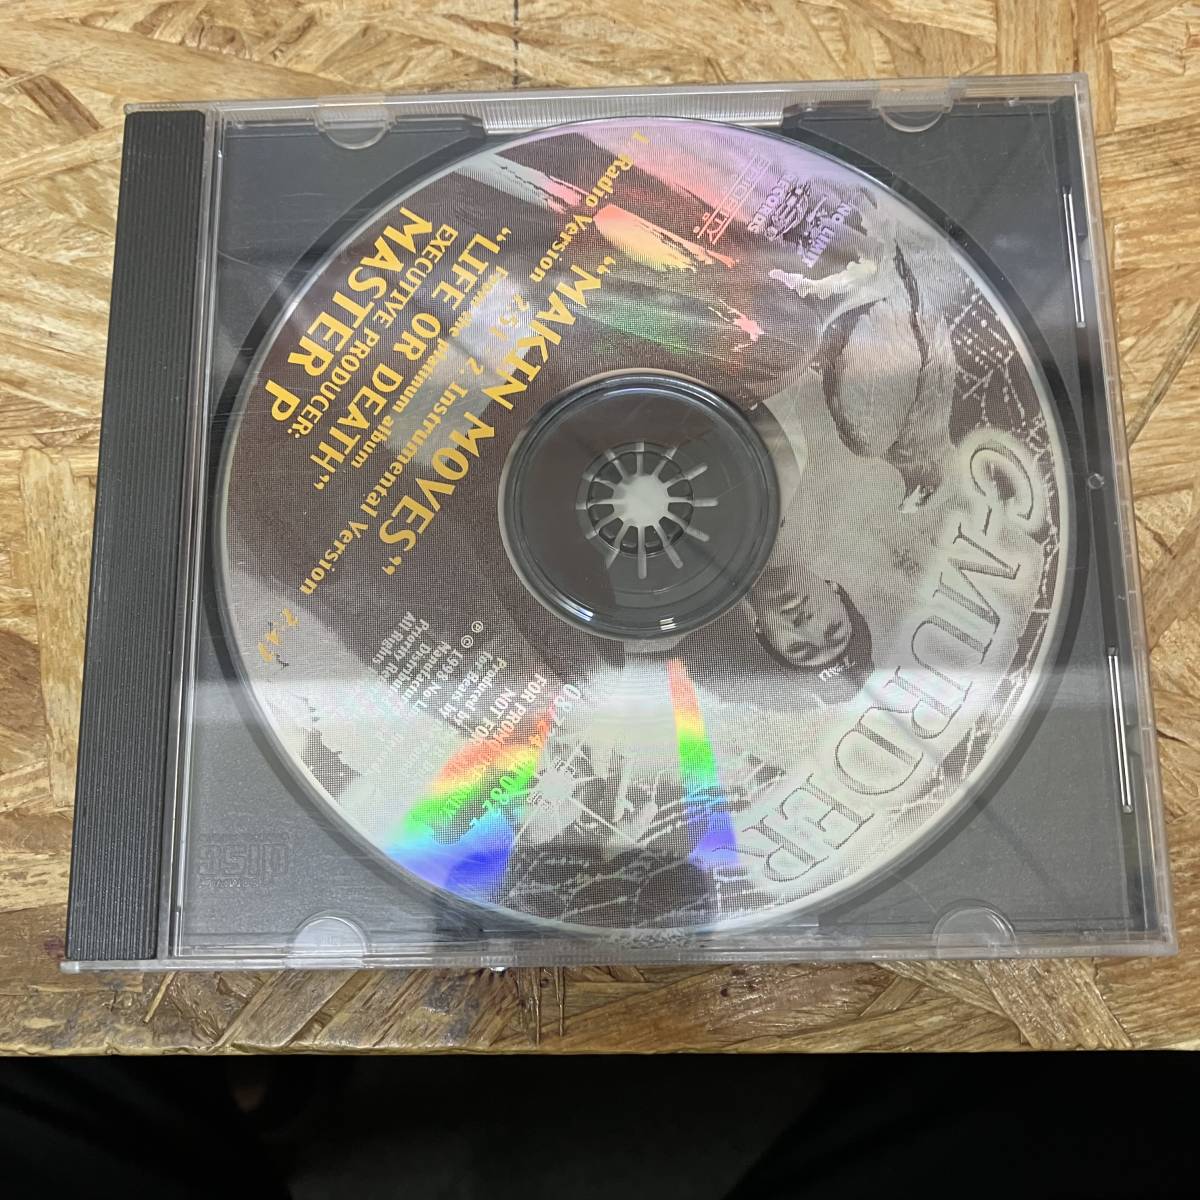 シ● HIPHOP,R&B C-MURDER - MAKIN MOVES INST,シングル,PROMO盤 CD 中古品_画像1